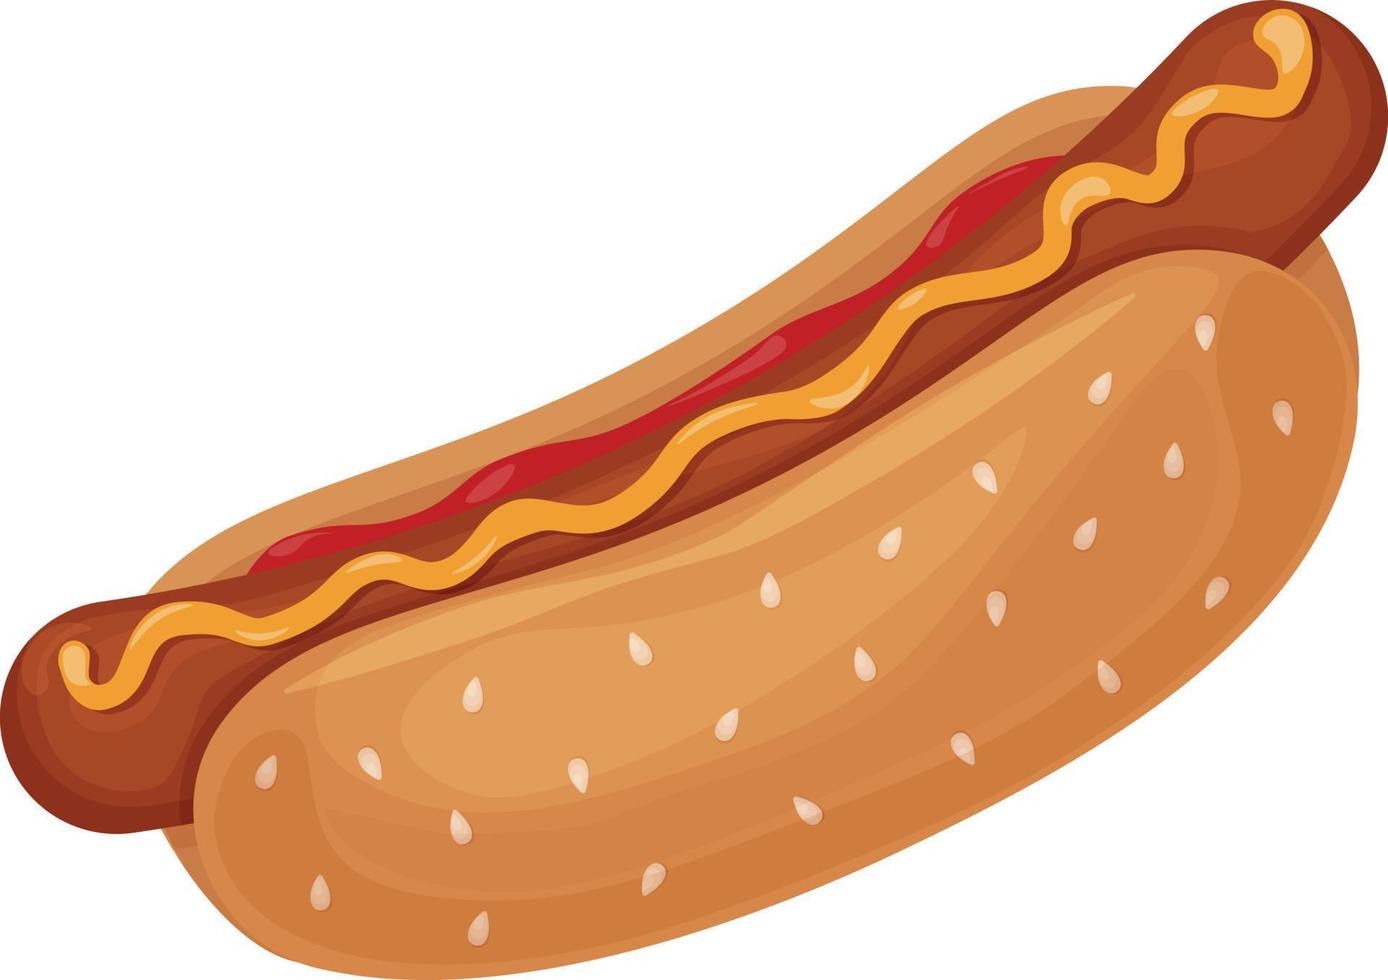 varm hund. bild av en varm hund med korv med ketchup och stänkte med senap. snabb mat. vektor illustration isolerat på en vit bakgrund